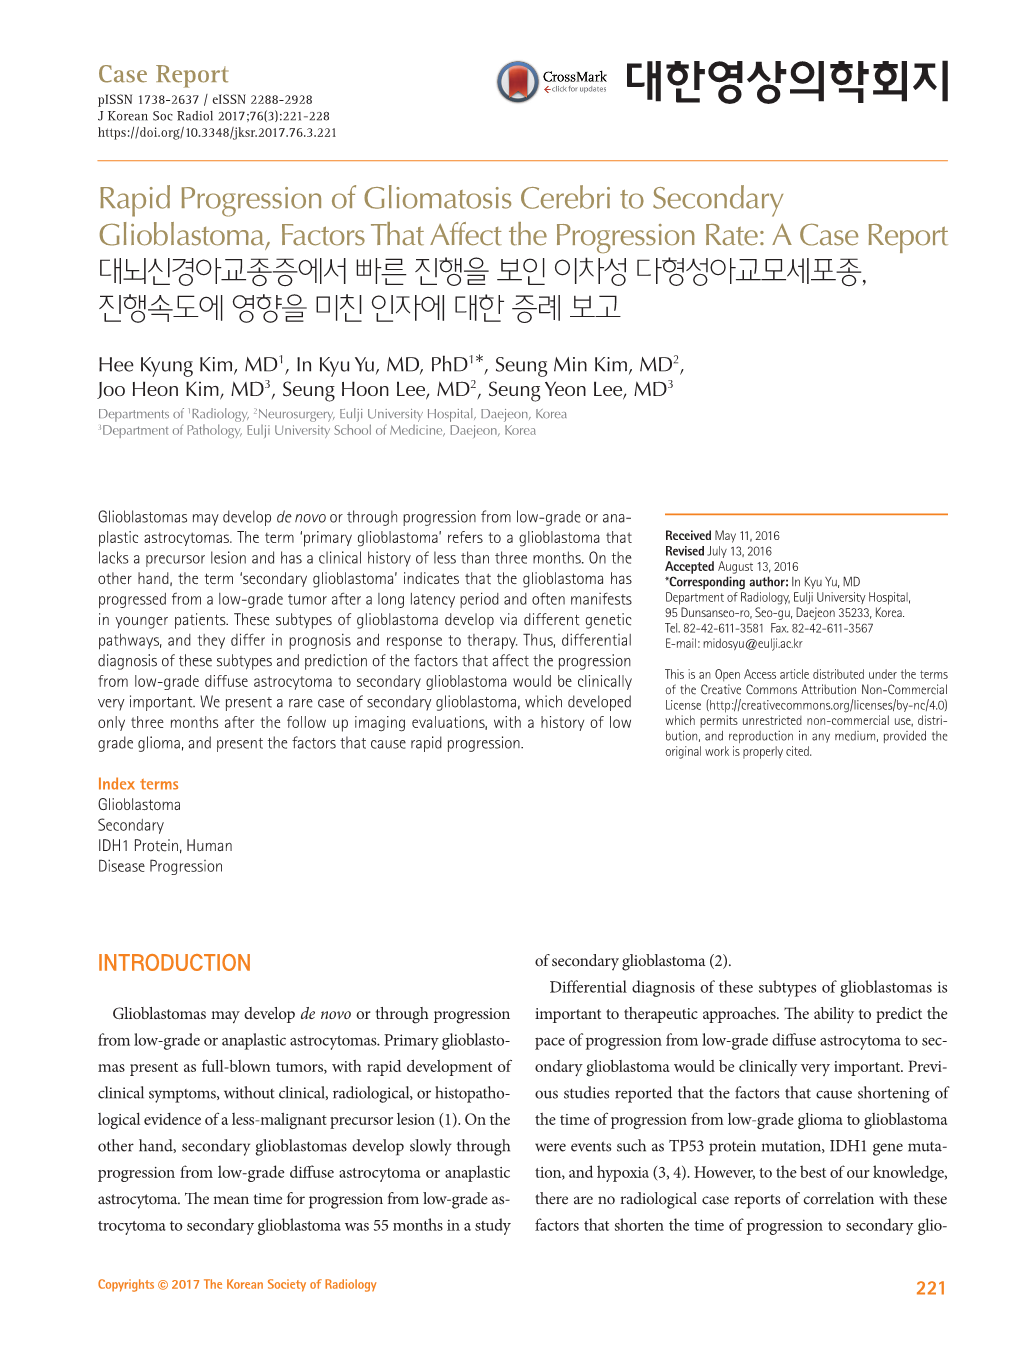 Rapid Progression of Gliomatosis Cerebri to Secondary Glioblastoma